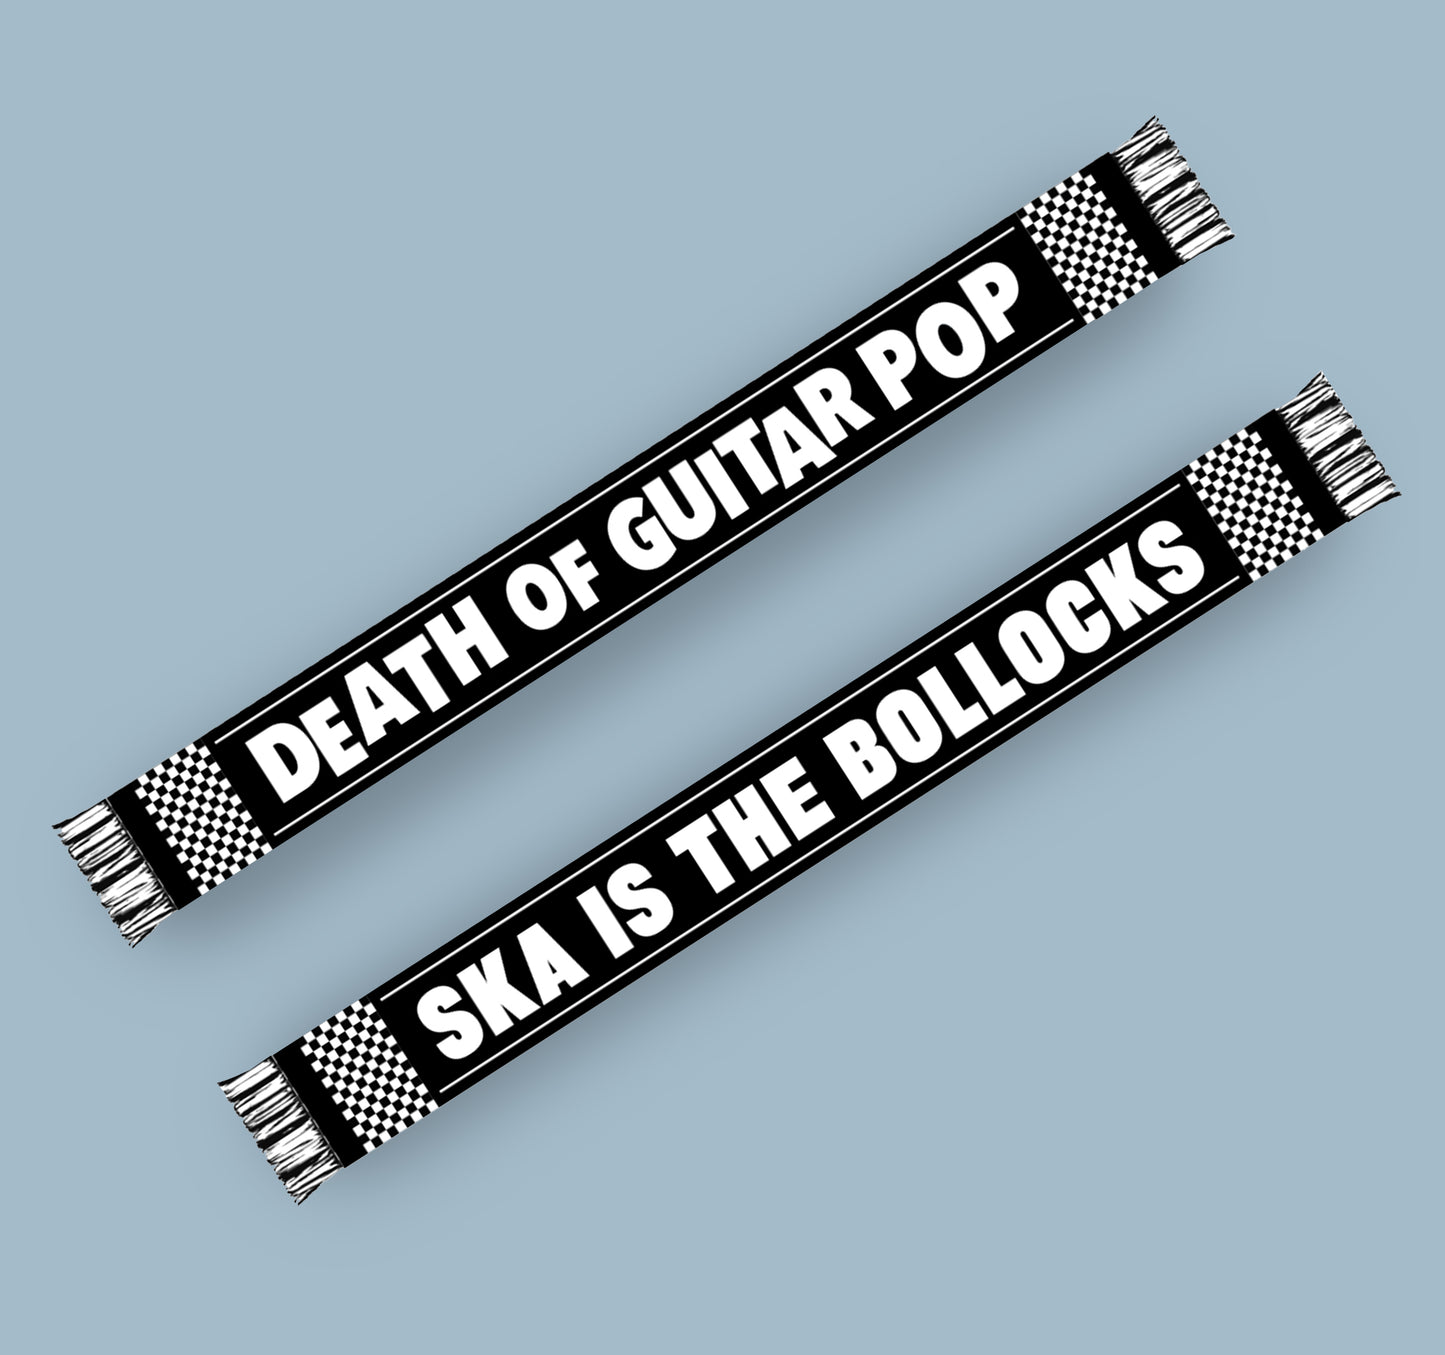 DEATH OF GUITAR POP - SKA IS THE BOLLOCKS SKARF